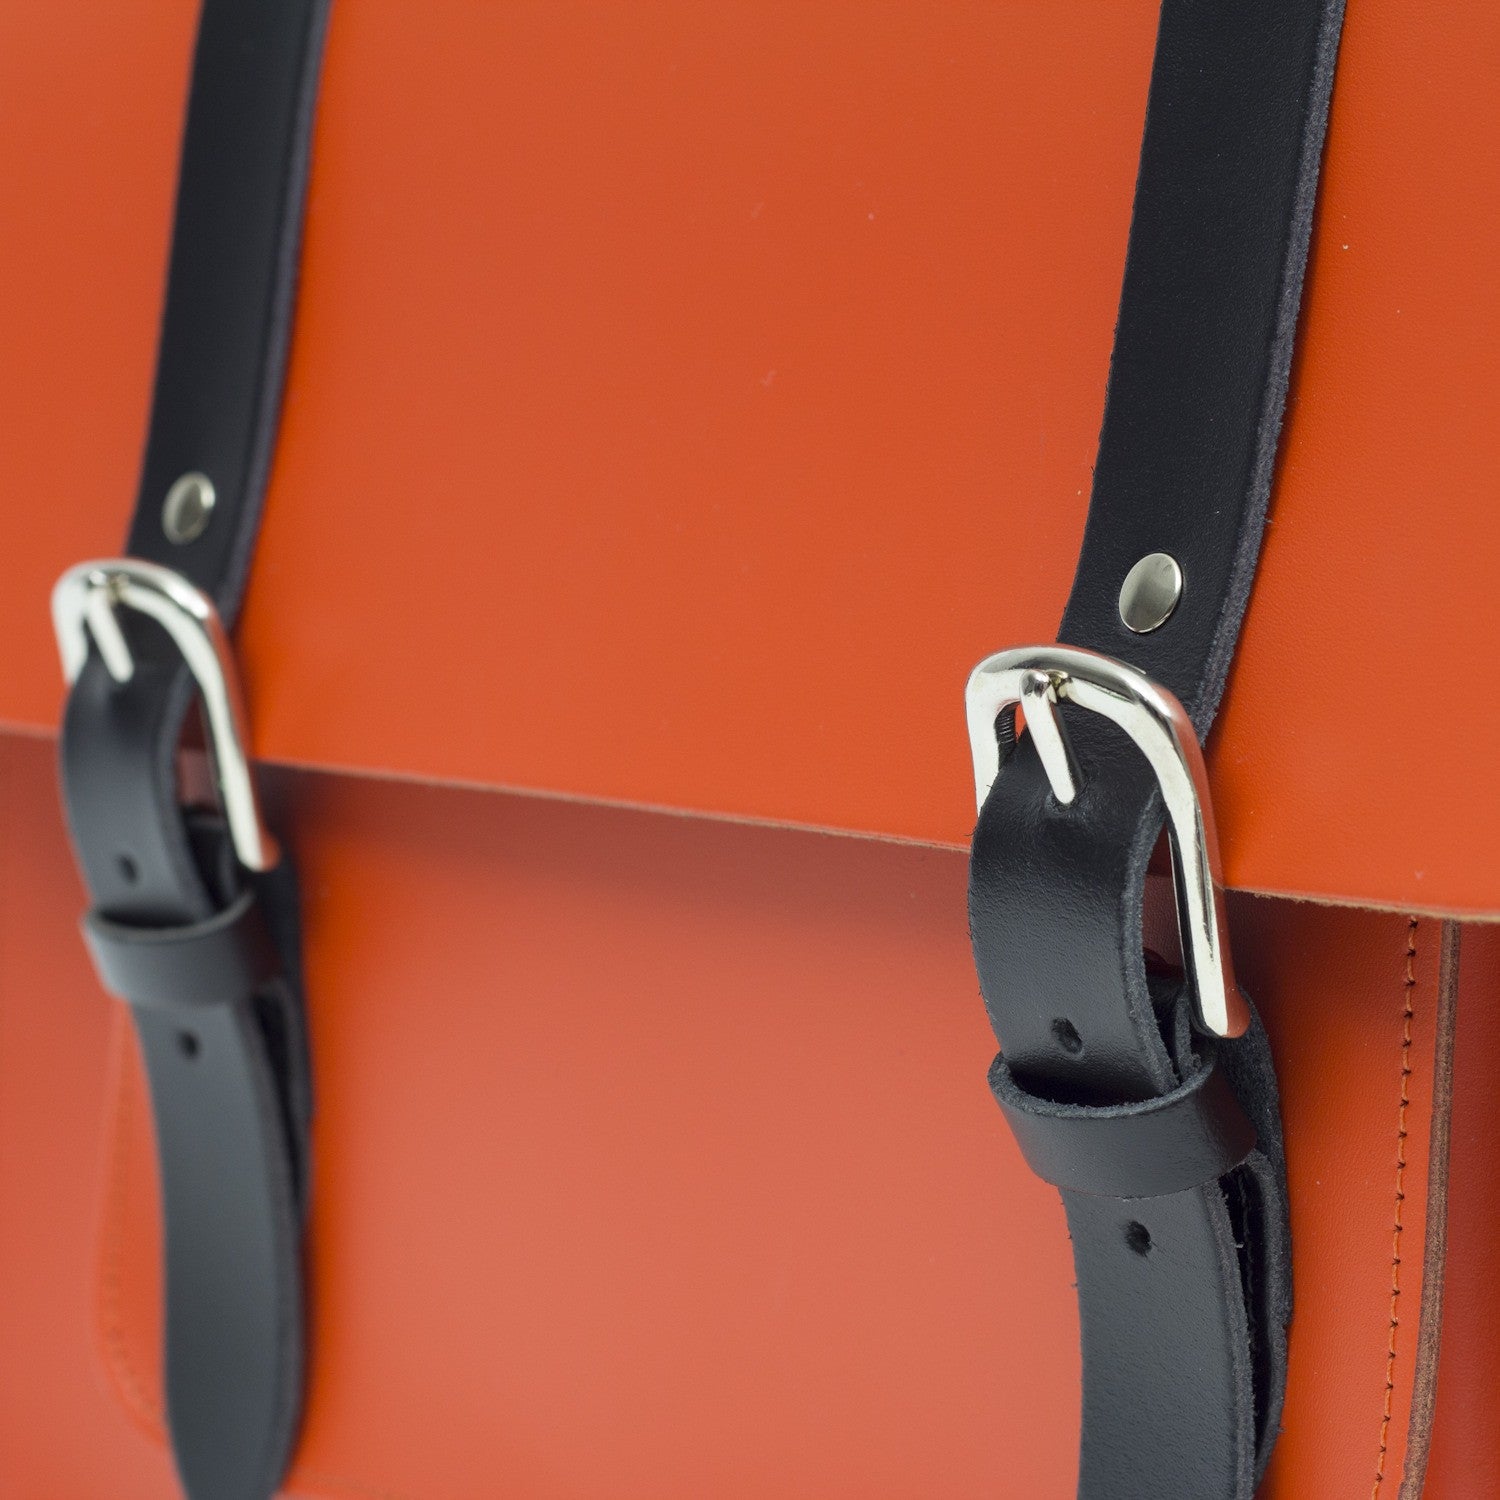 Hill and Ellis Jasper Dutch Orange Leather Pannier showing front straps